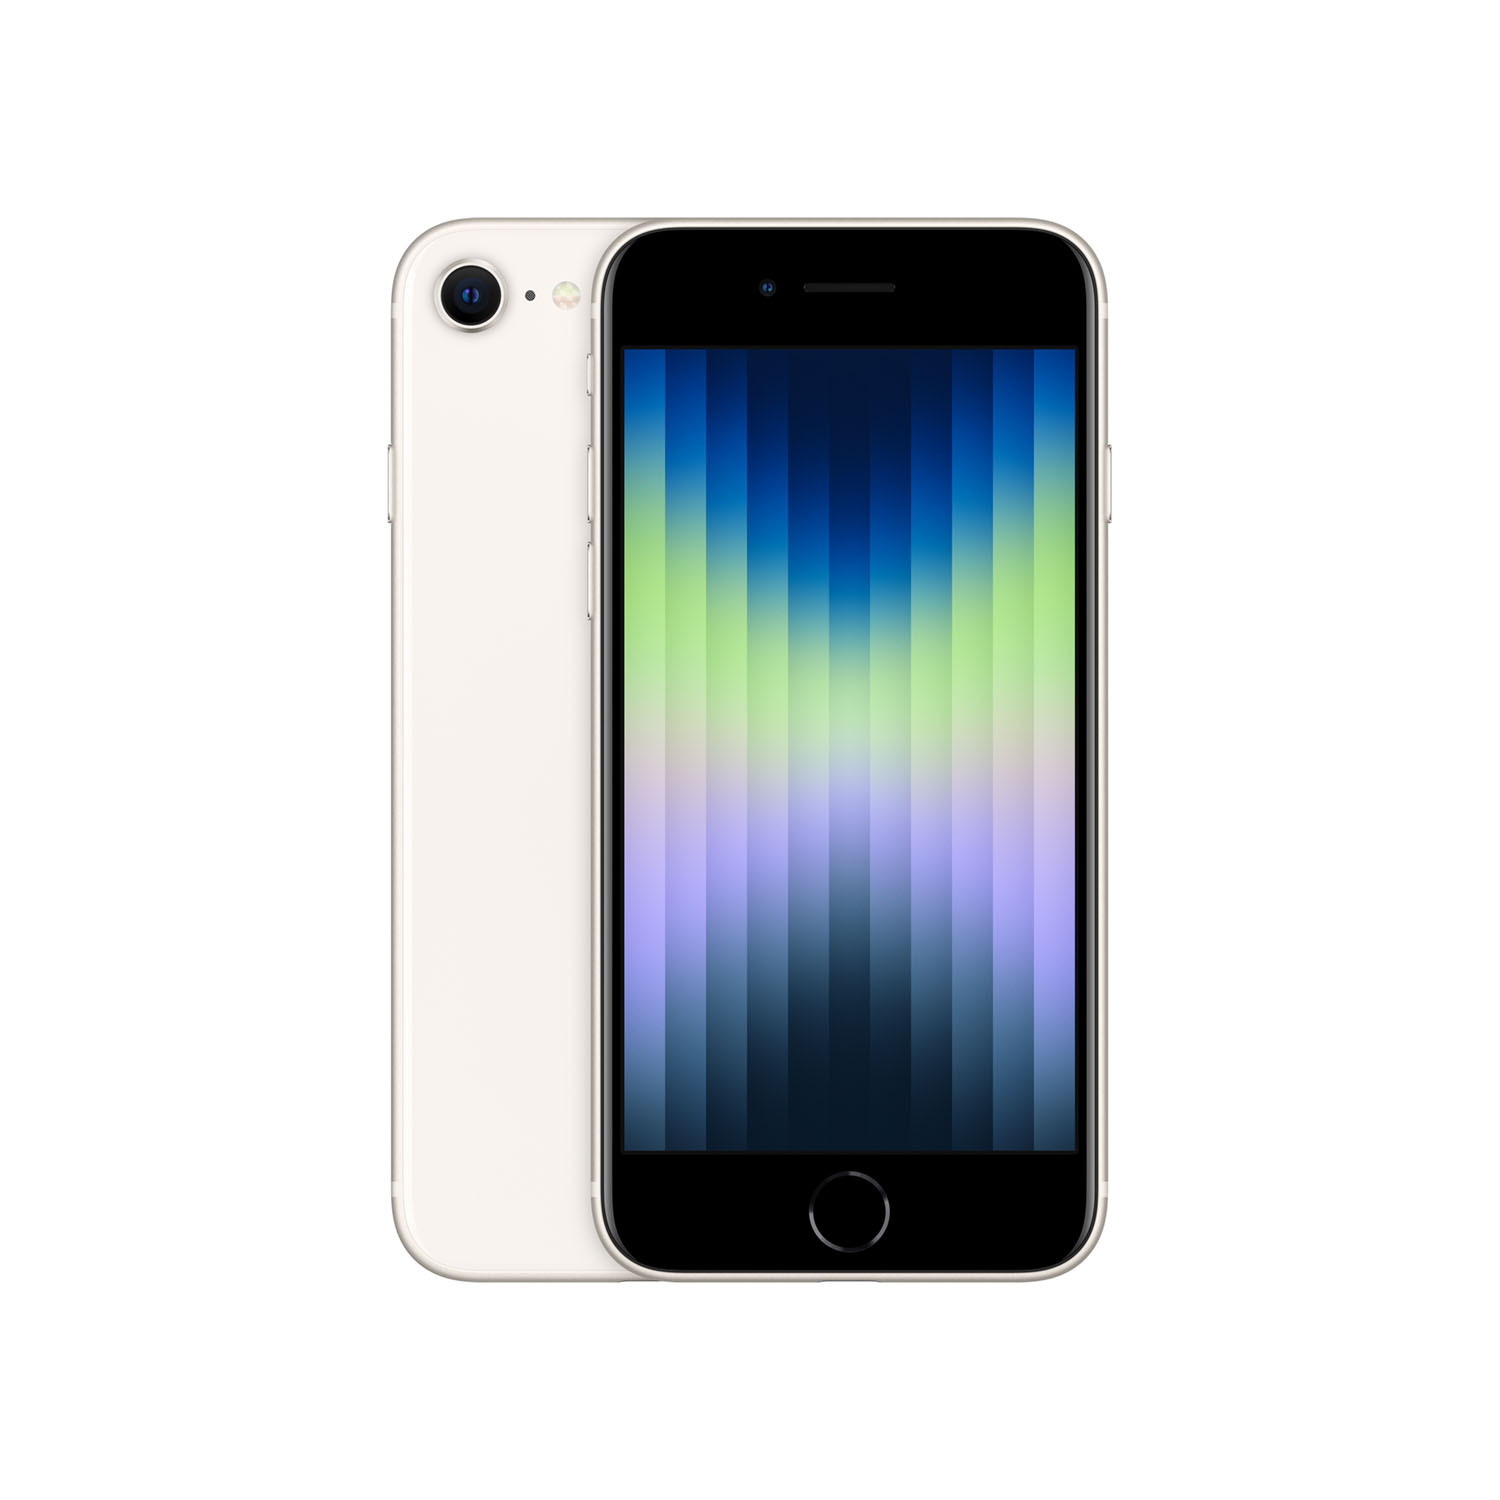 Apple iPhone SE 128GB - Polarstern